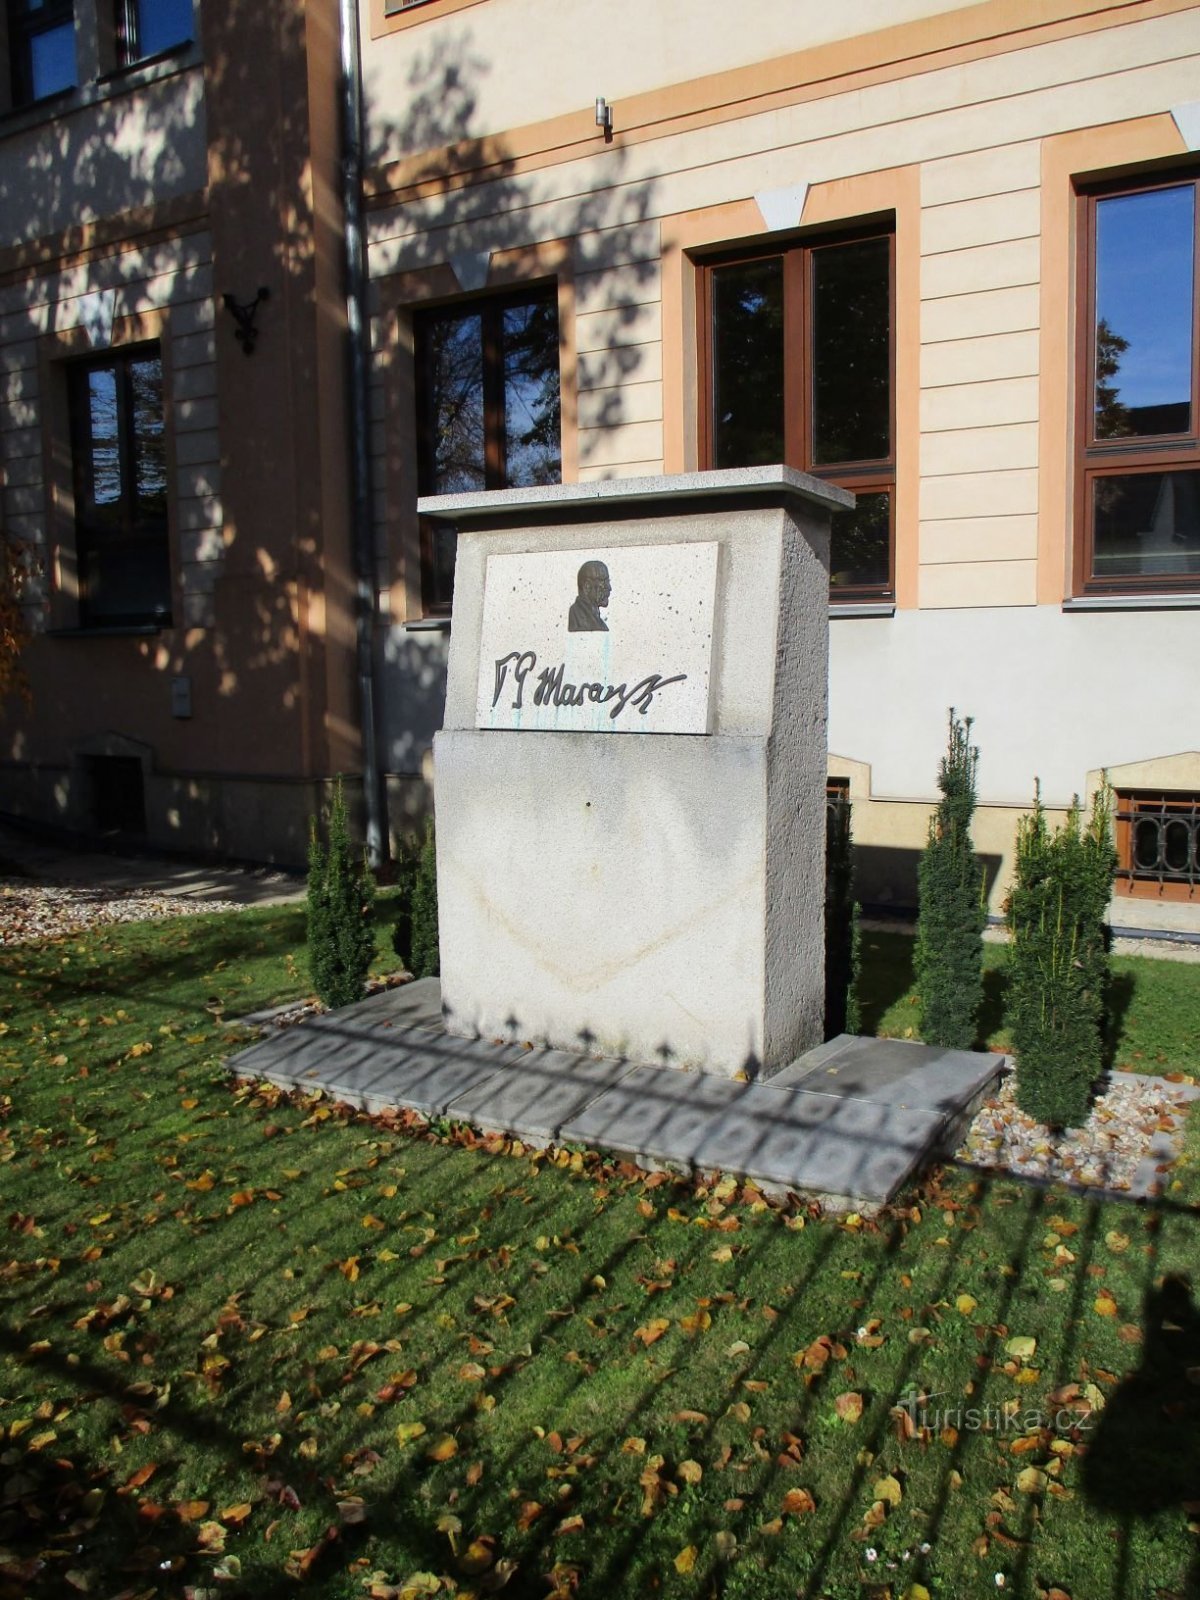 ウプルコバー通りの小学校前にある解放記念碑 (Hradec Králové、28.10.2020 年 XNUMX 月 XNUMX 日)